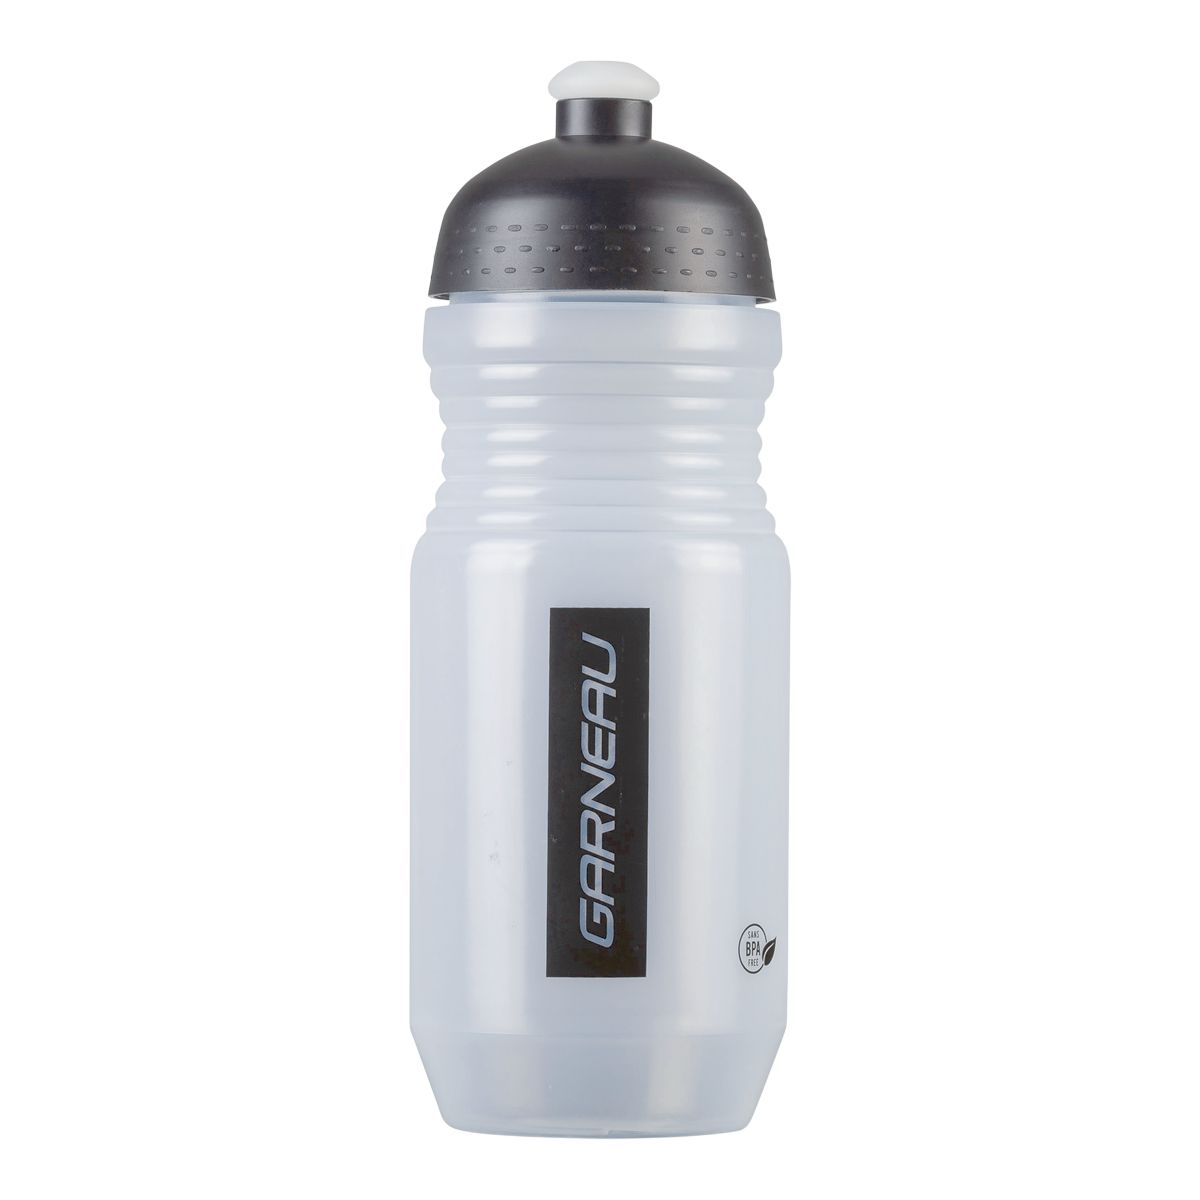 Louis Garneau Neo Bidon II 600ml Bike Water Bottle Sport Cap Plastic